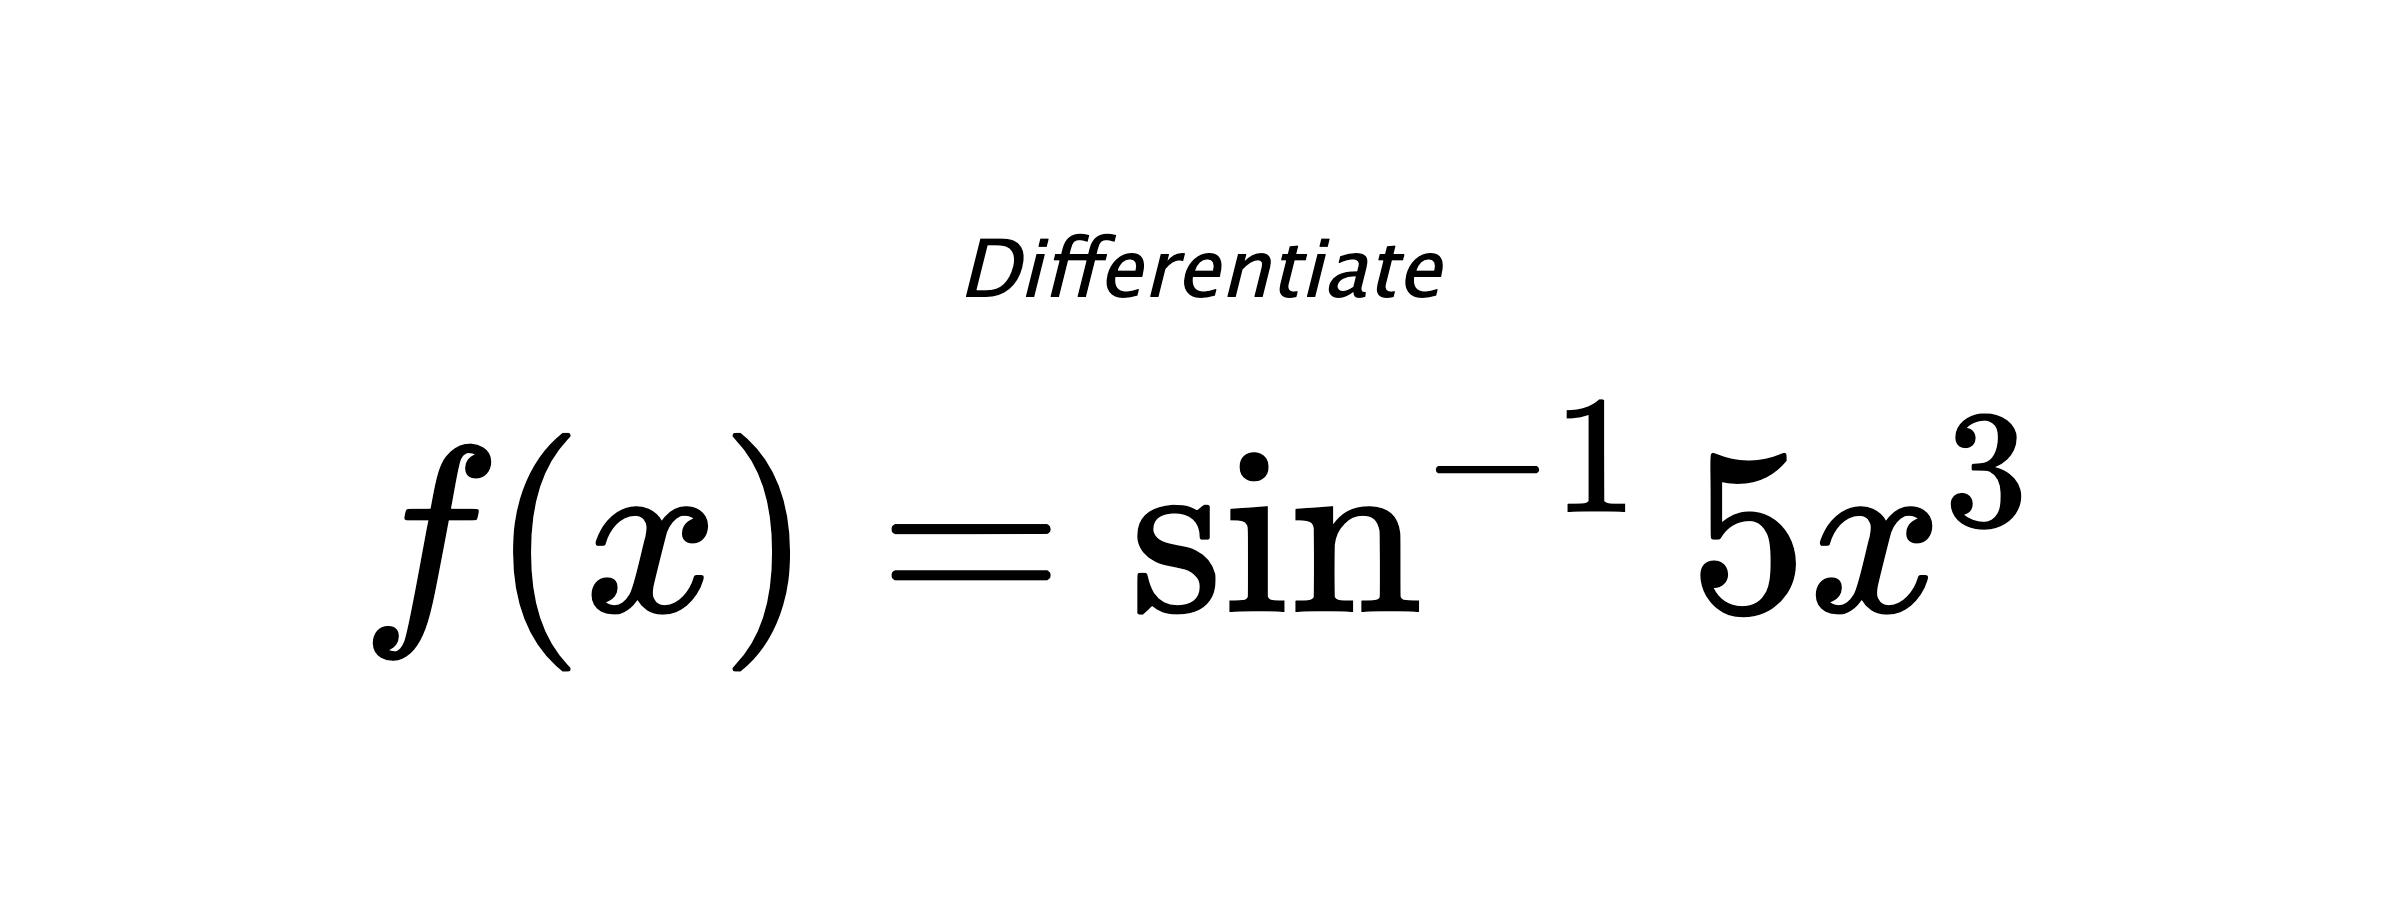 Differentiate $ f(x) = \sin^{-1} 5x^3 $